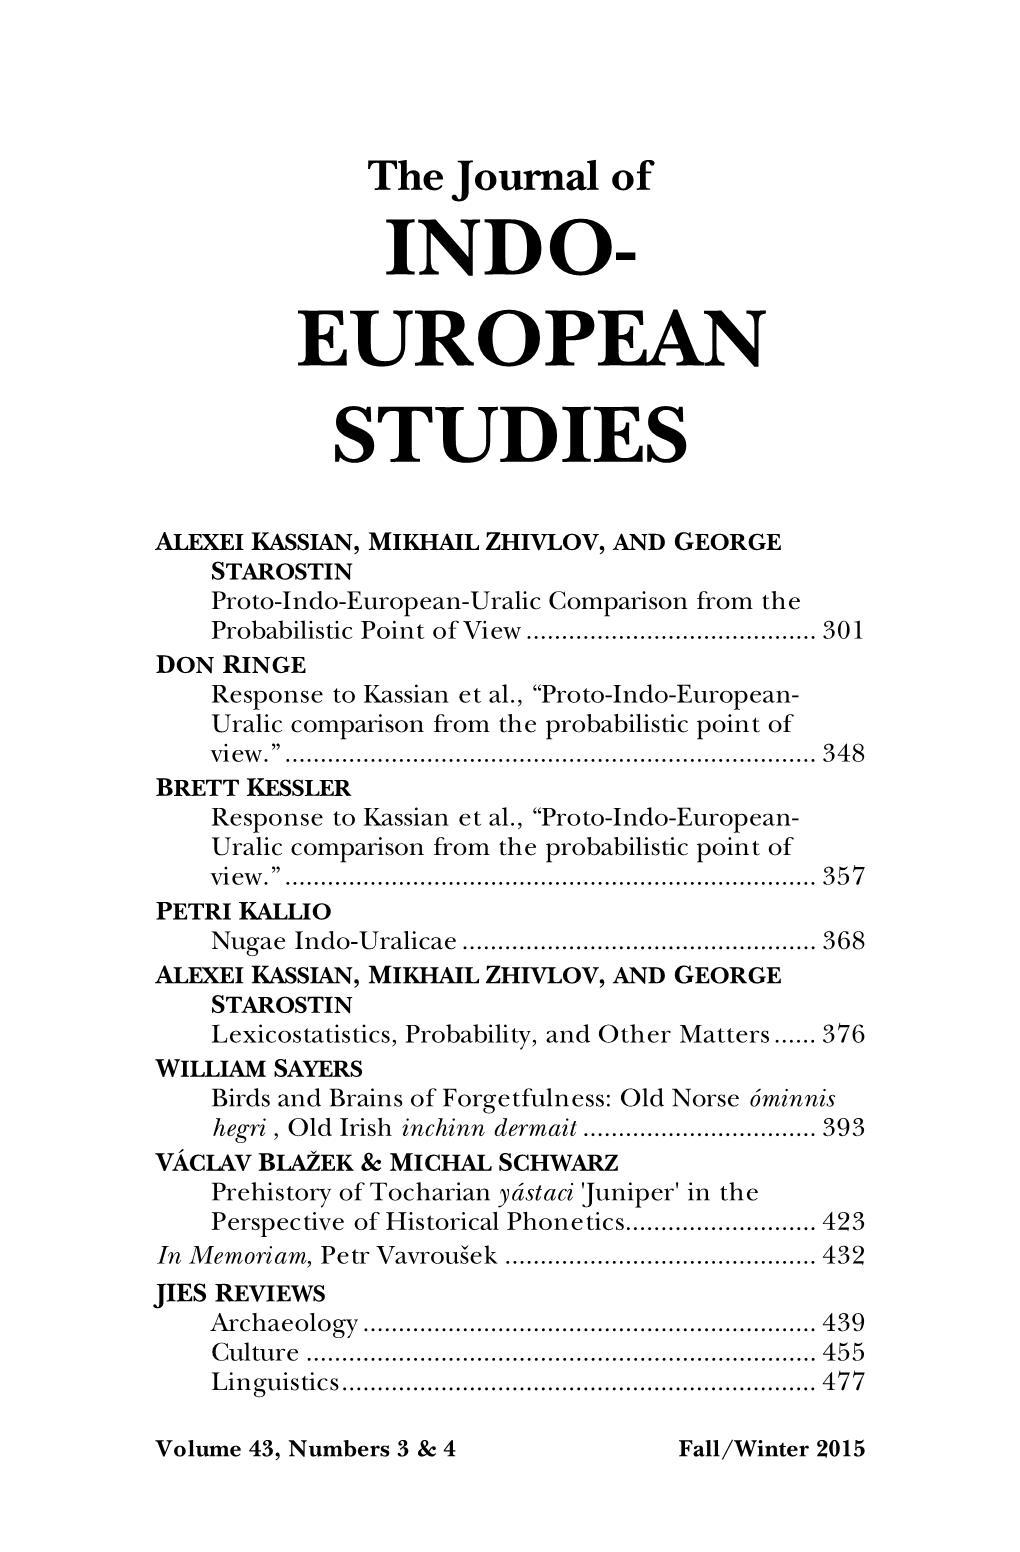 Indo- European Studies